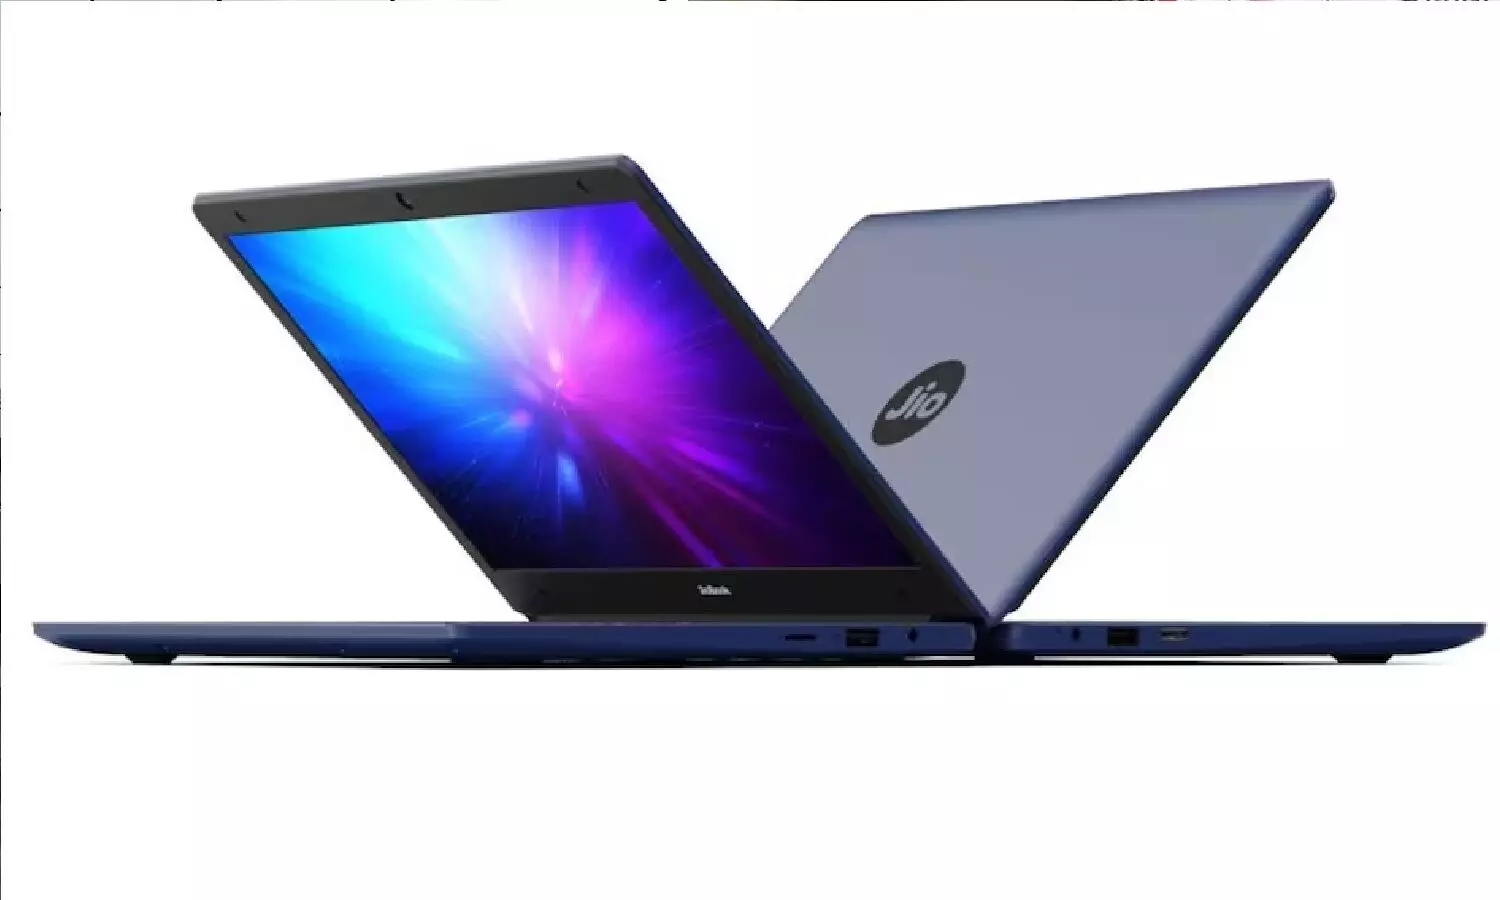 JioBook Laptop Review In Hindi: सबसे सस्ता लैपटॉप! जियोबुक लैपटॉप के बारे में सब जानें